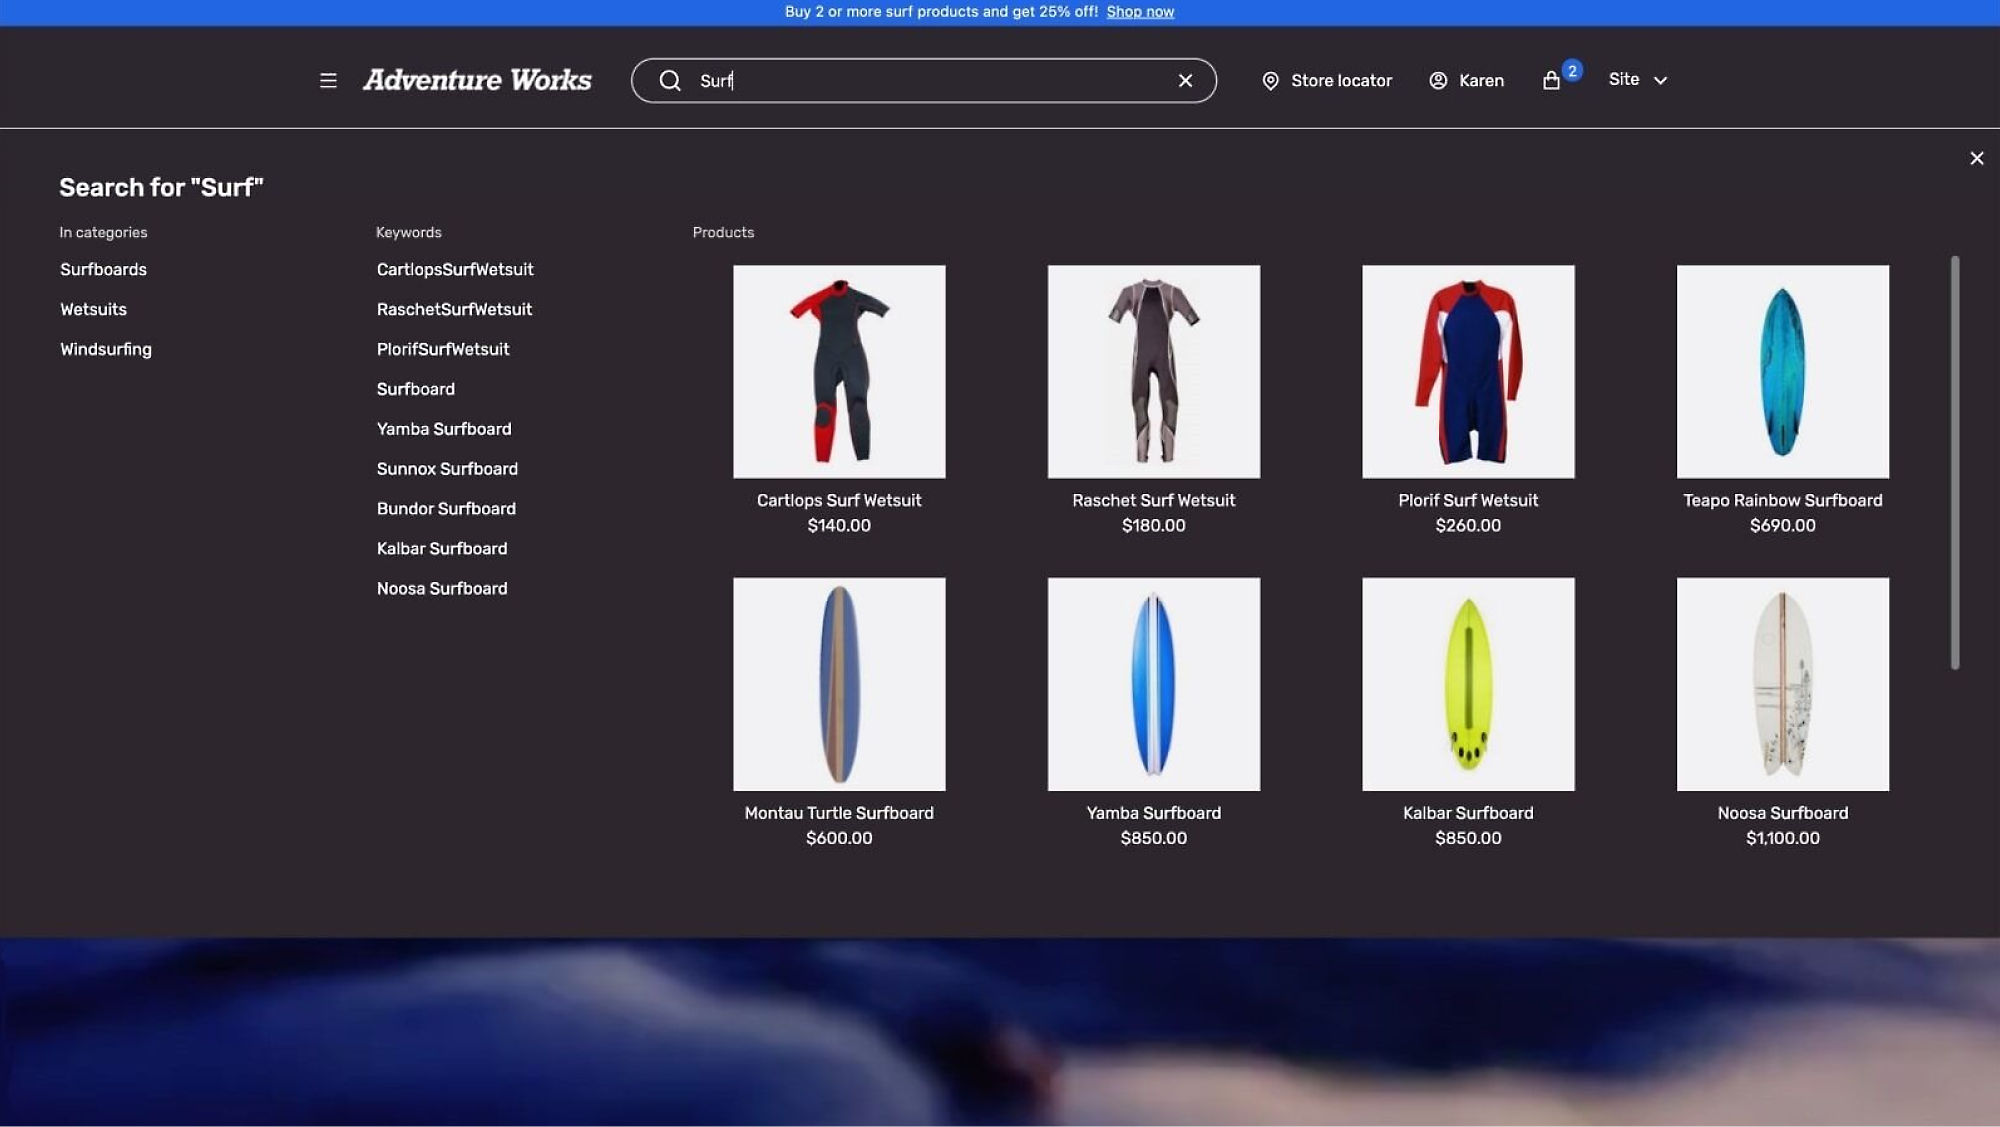 促銷活動：購買 2 種以上的衝浪產品，可享受 75 折的優惠。產品包括衝浪板和防寒衣。列出的價格。